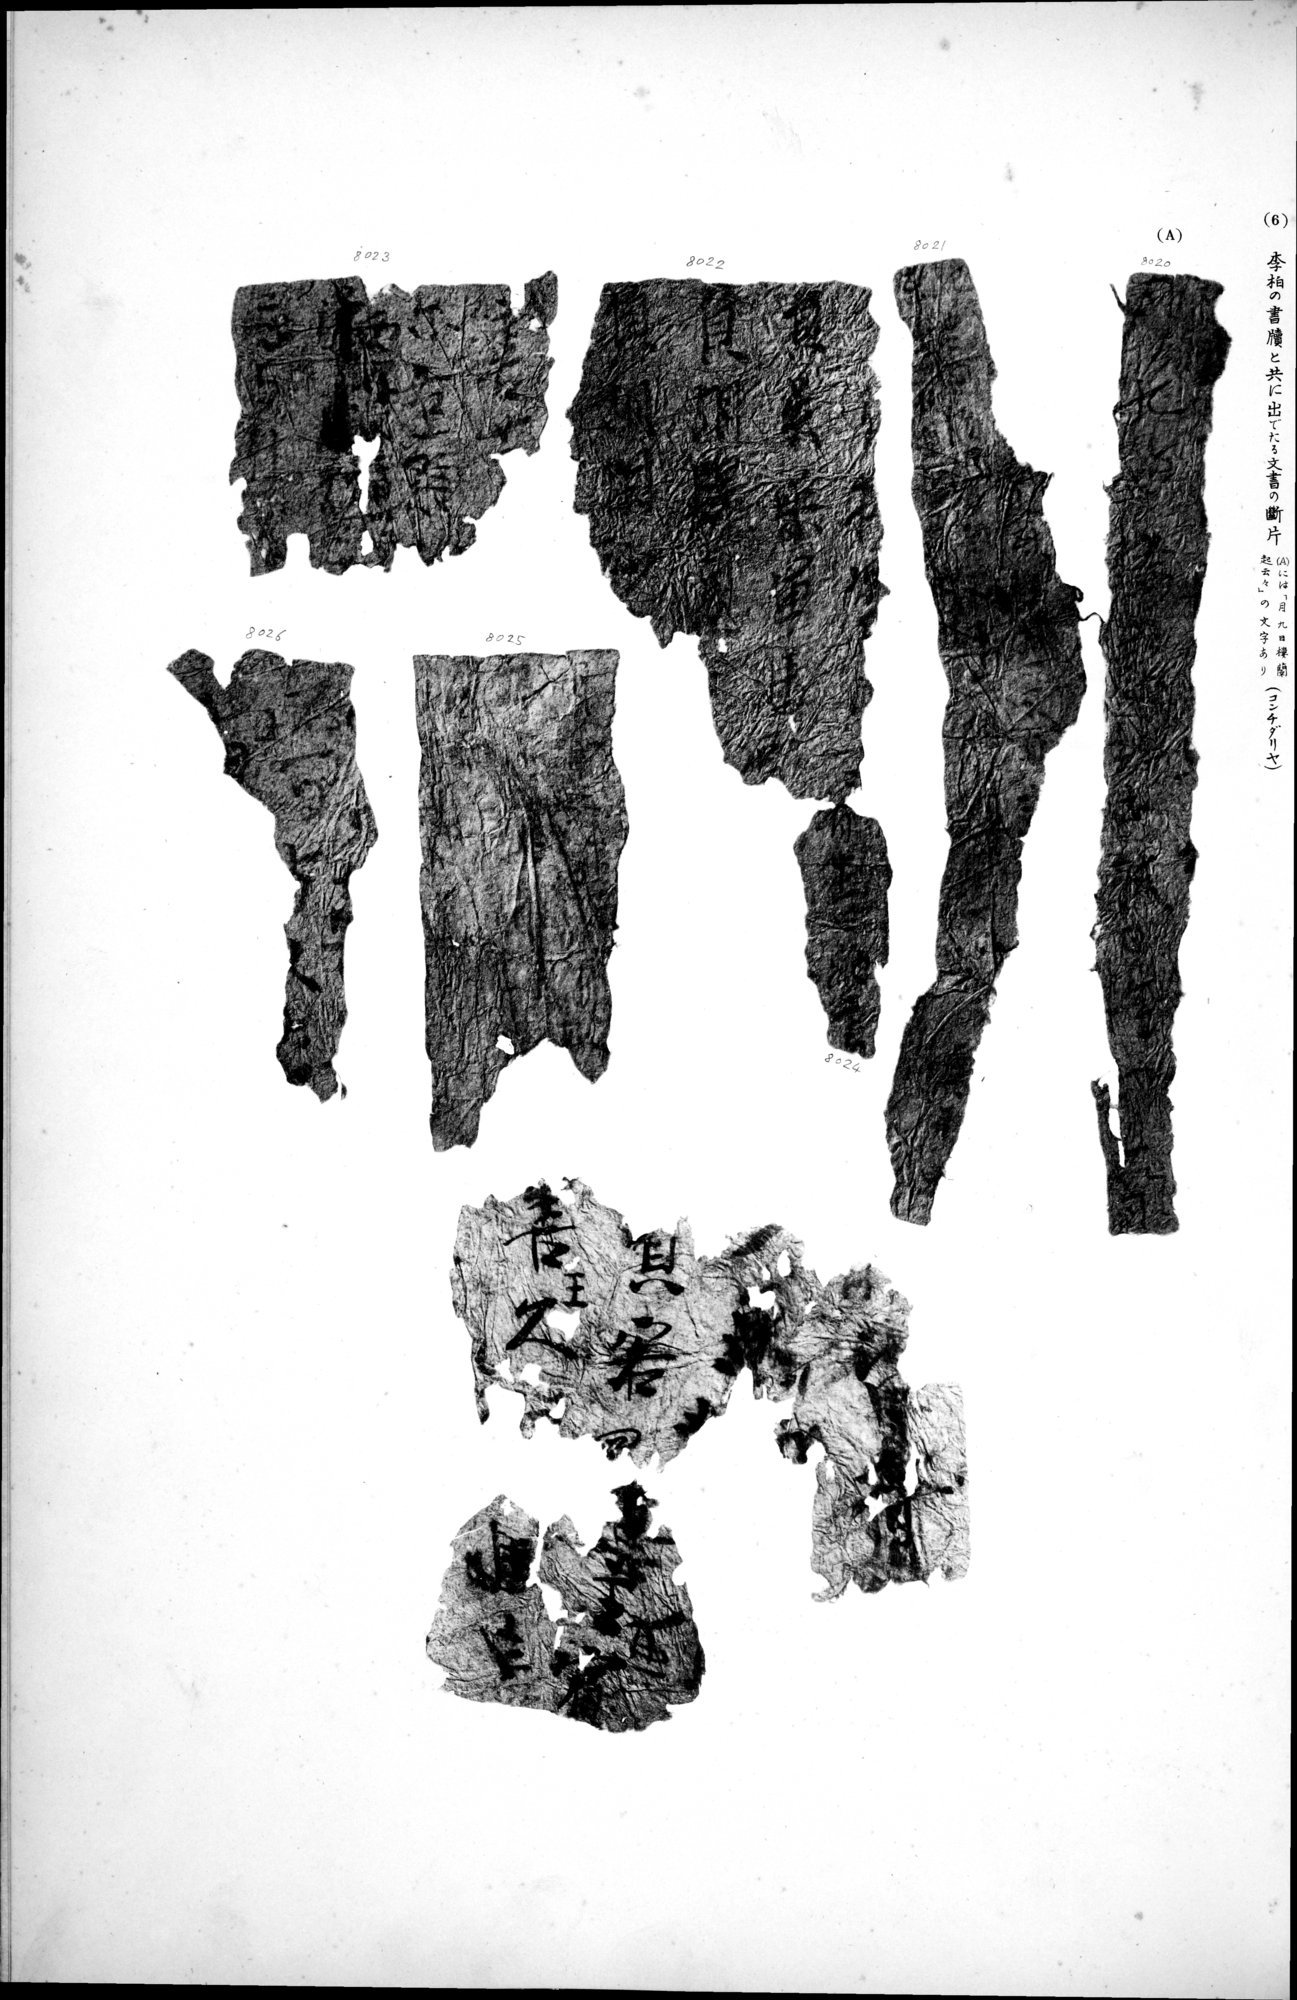 西域考古図譜 : vol.2 / Page 185 (Grayscale High Resolution Image)